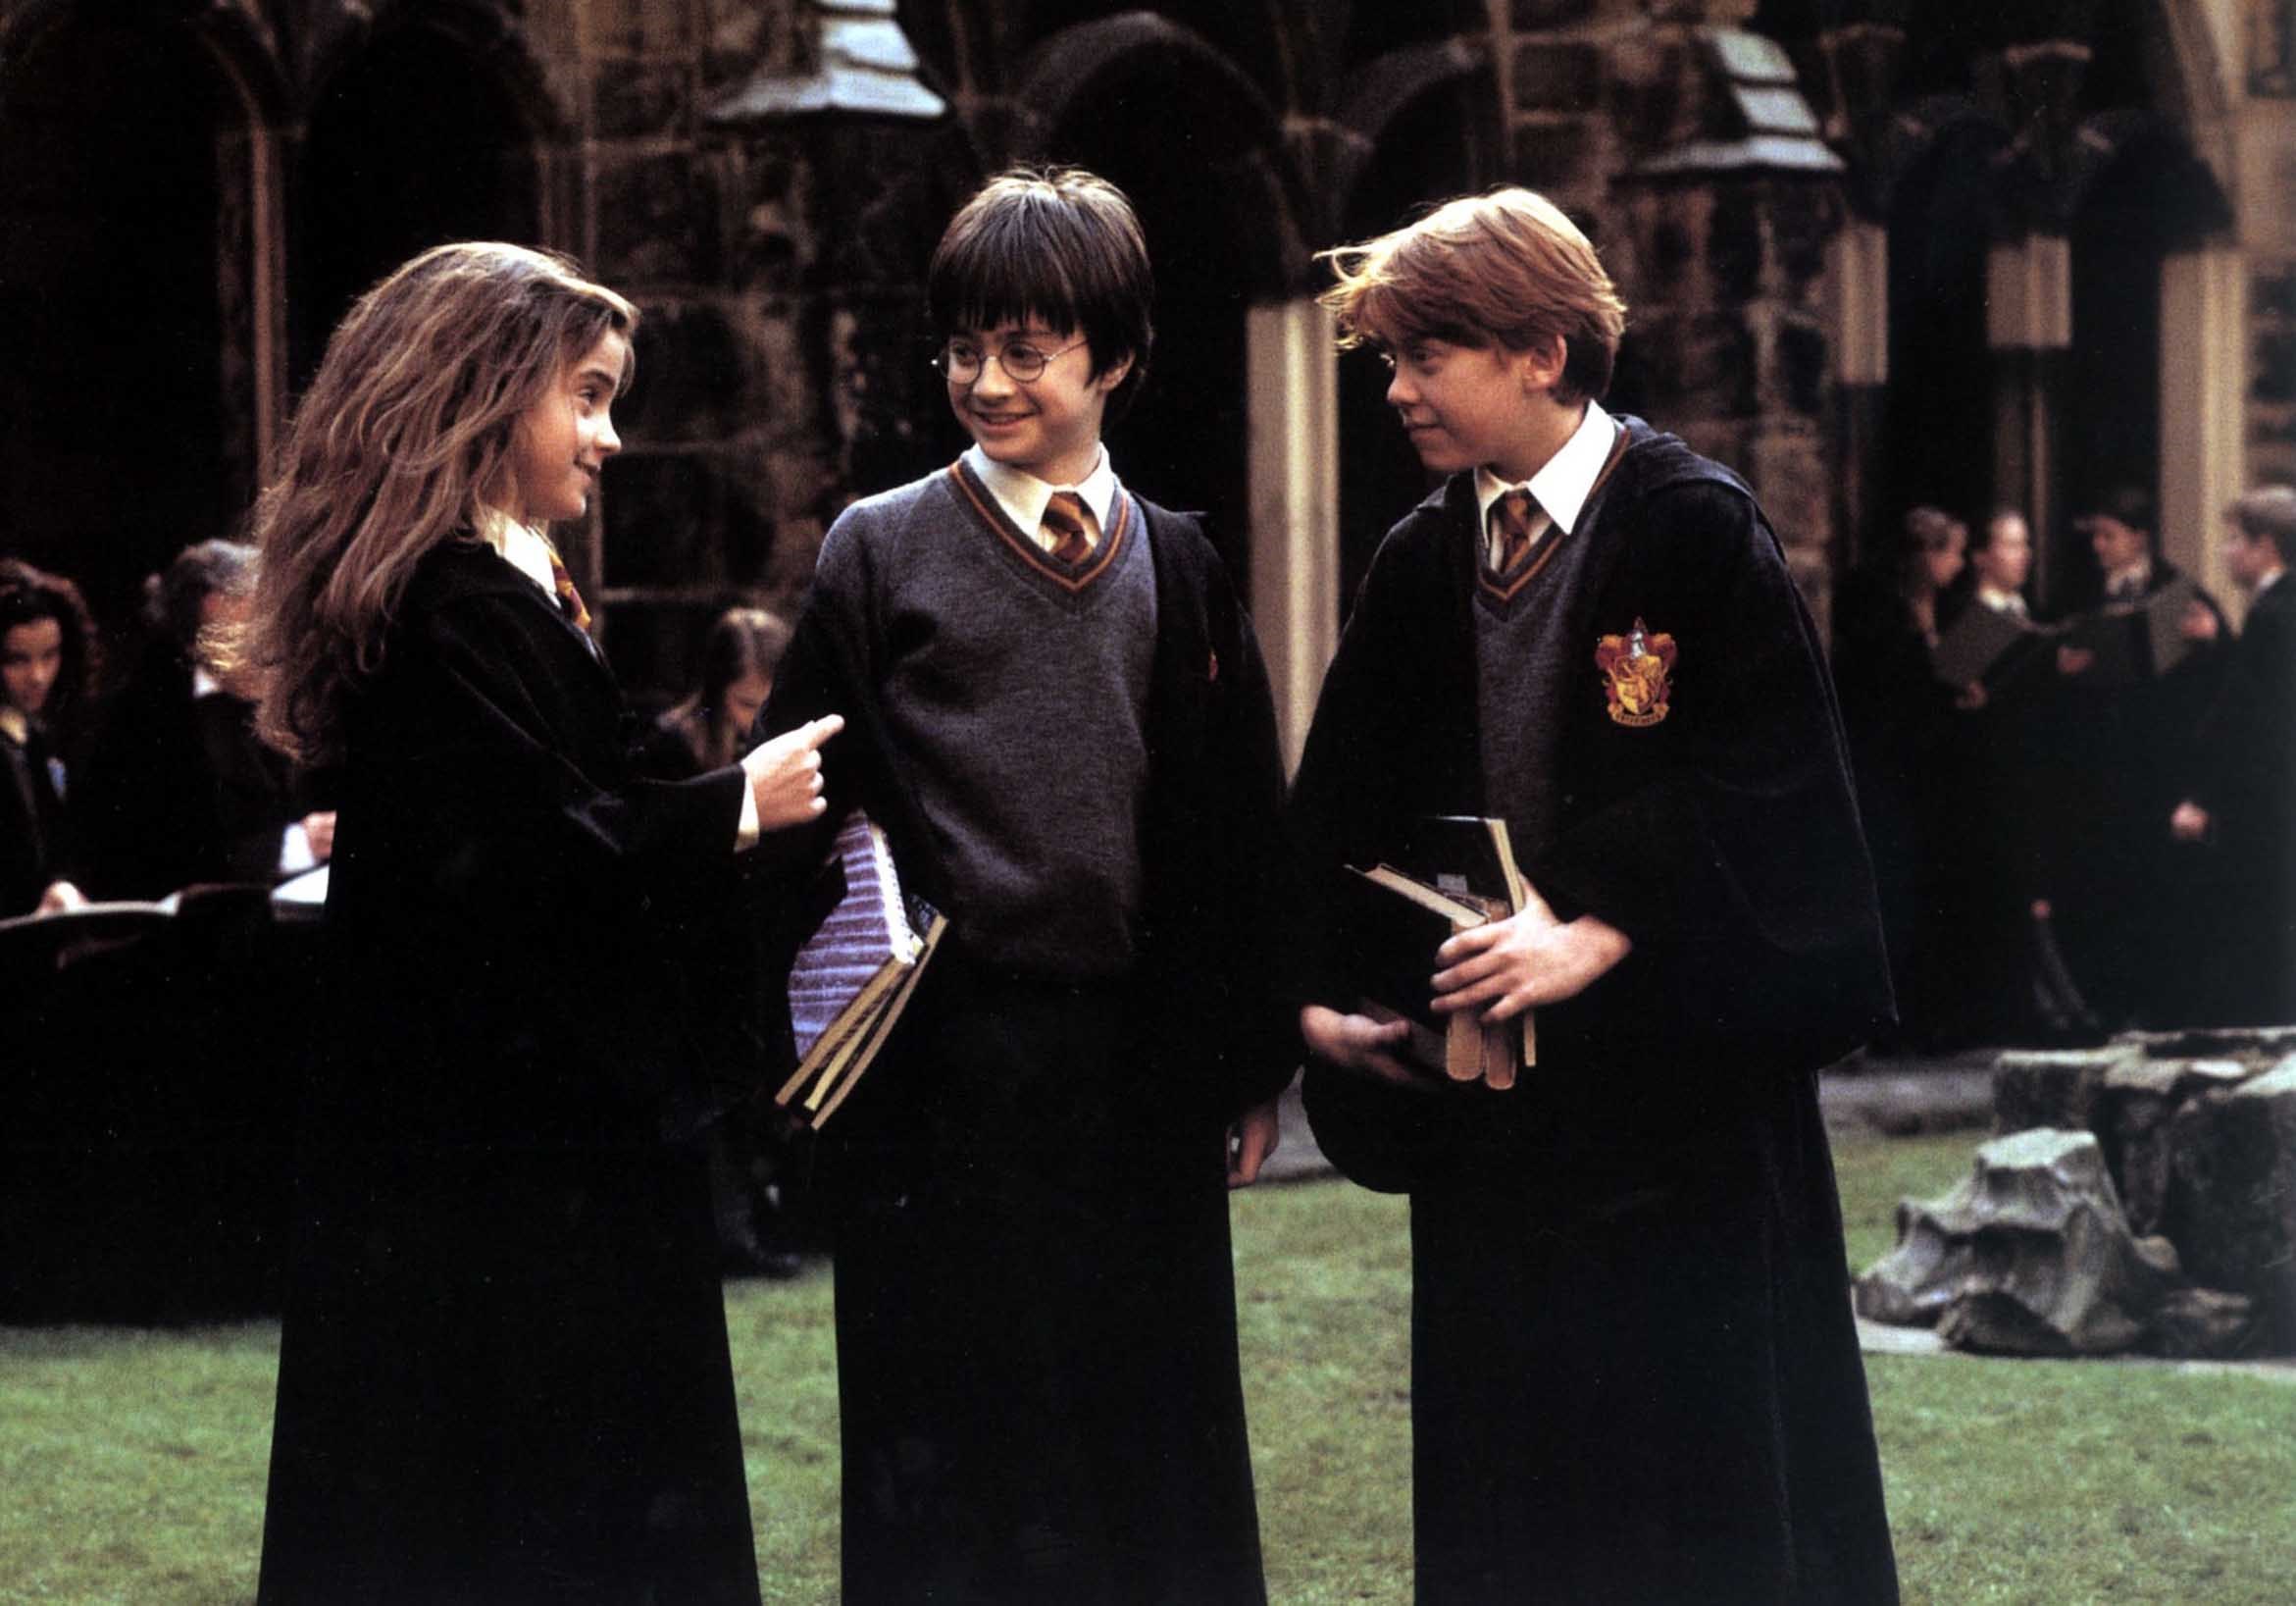 Affiche du film Harry Potter à l'école des Sorciers